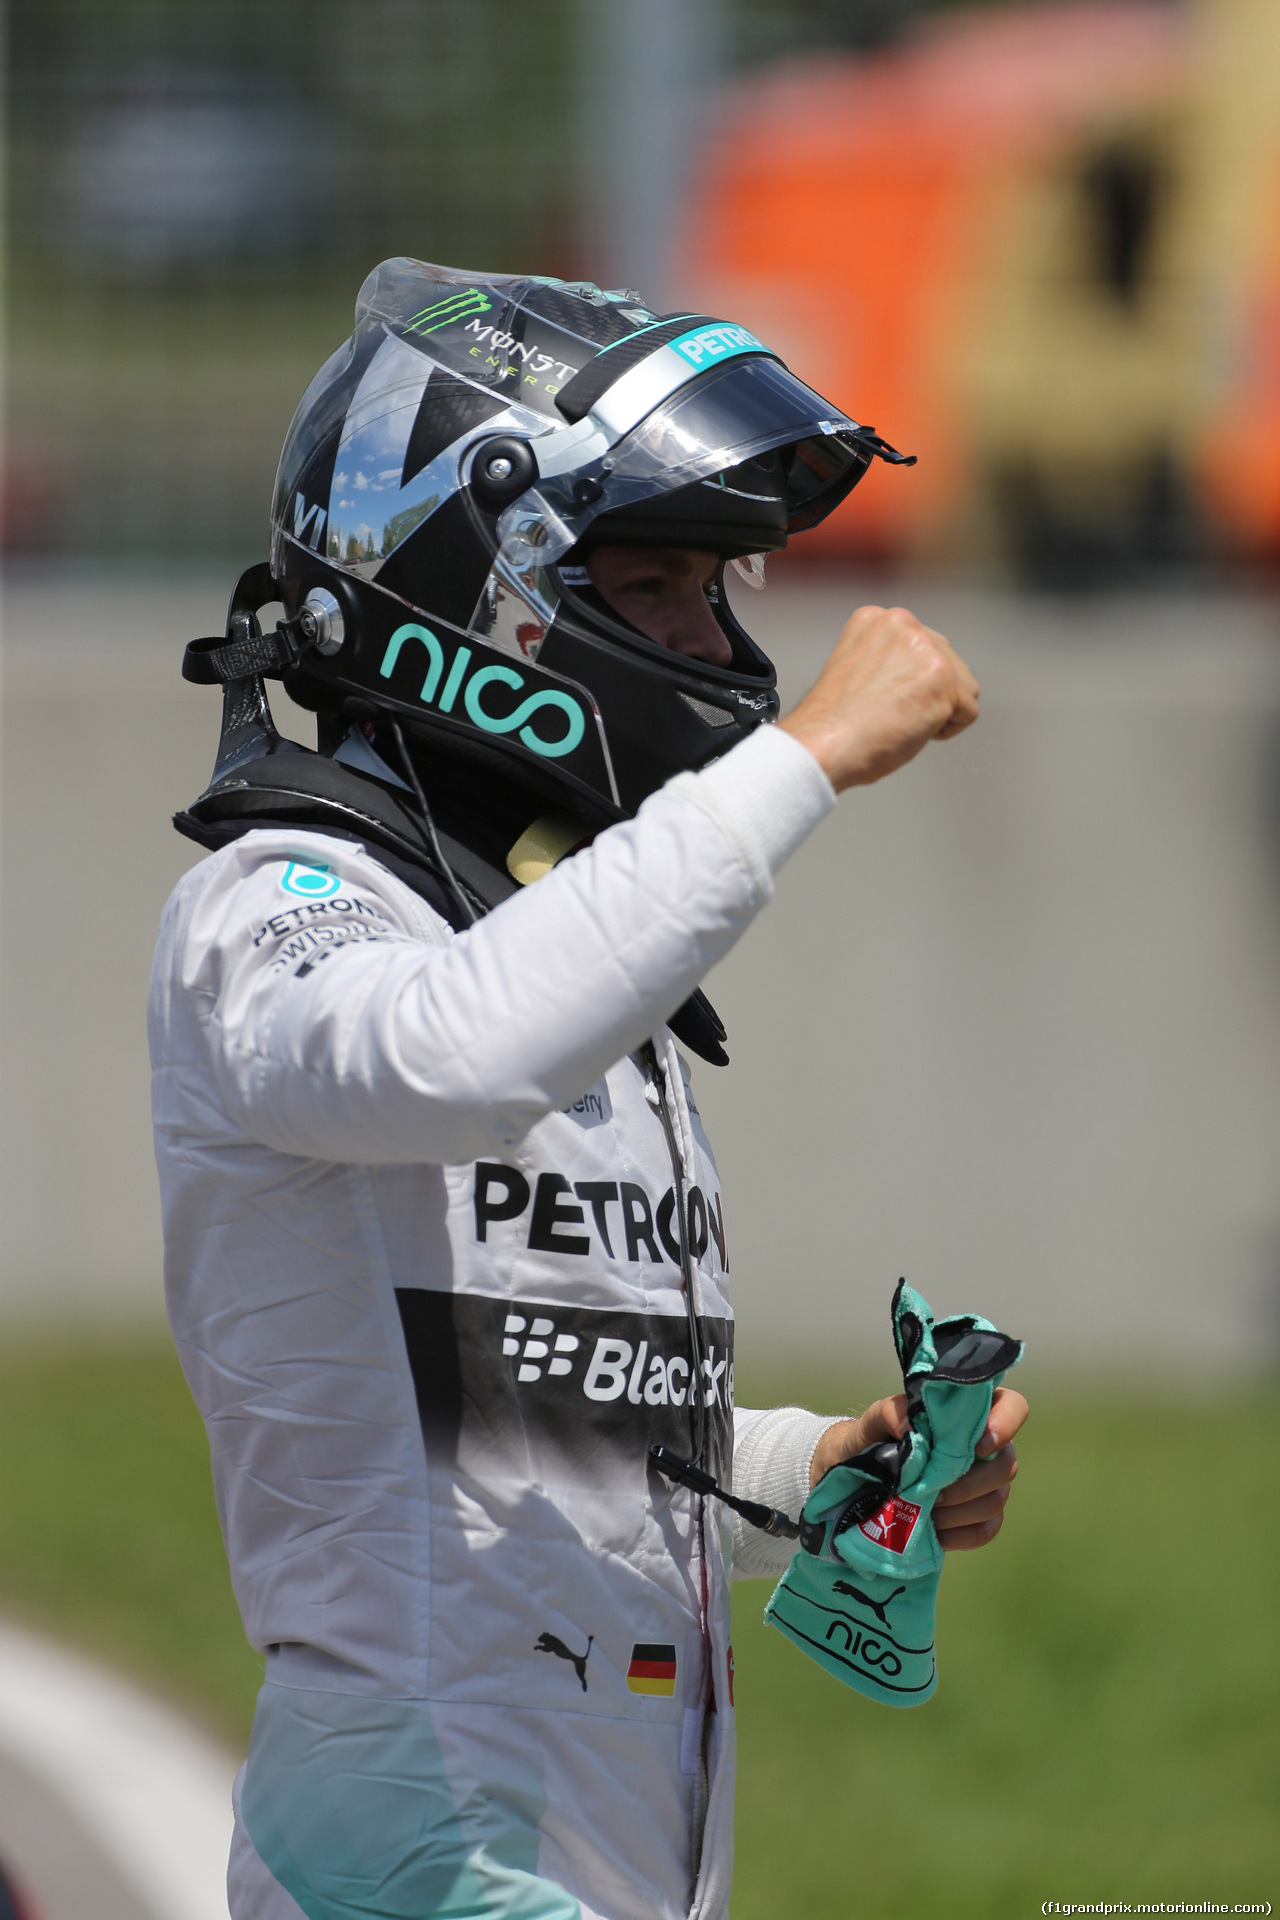 GP CANADA, 07.06.2014- Qualifiche, Nico Rosberg (GER) Mercedes AMG F1 W05 pole position